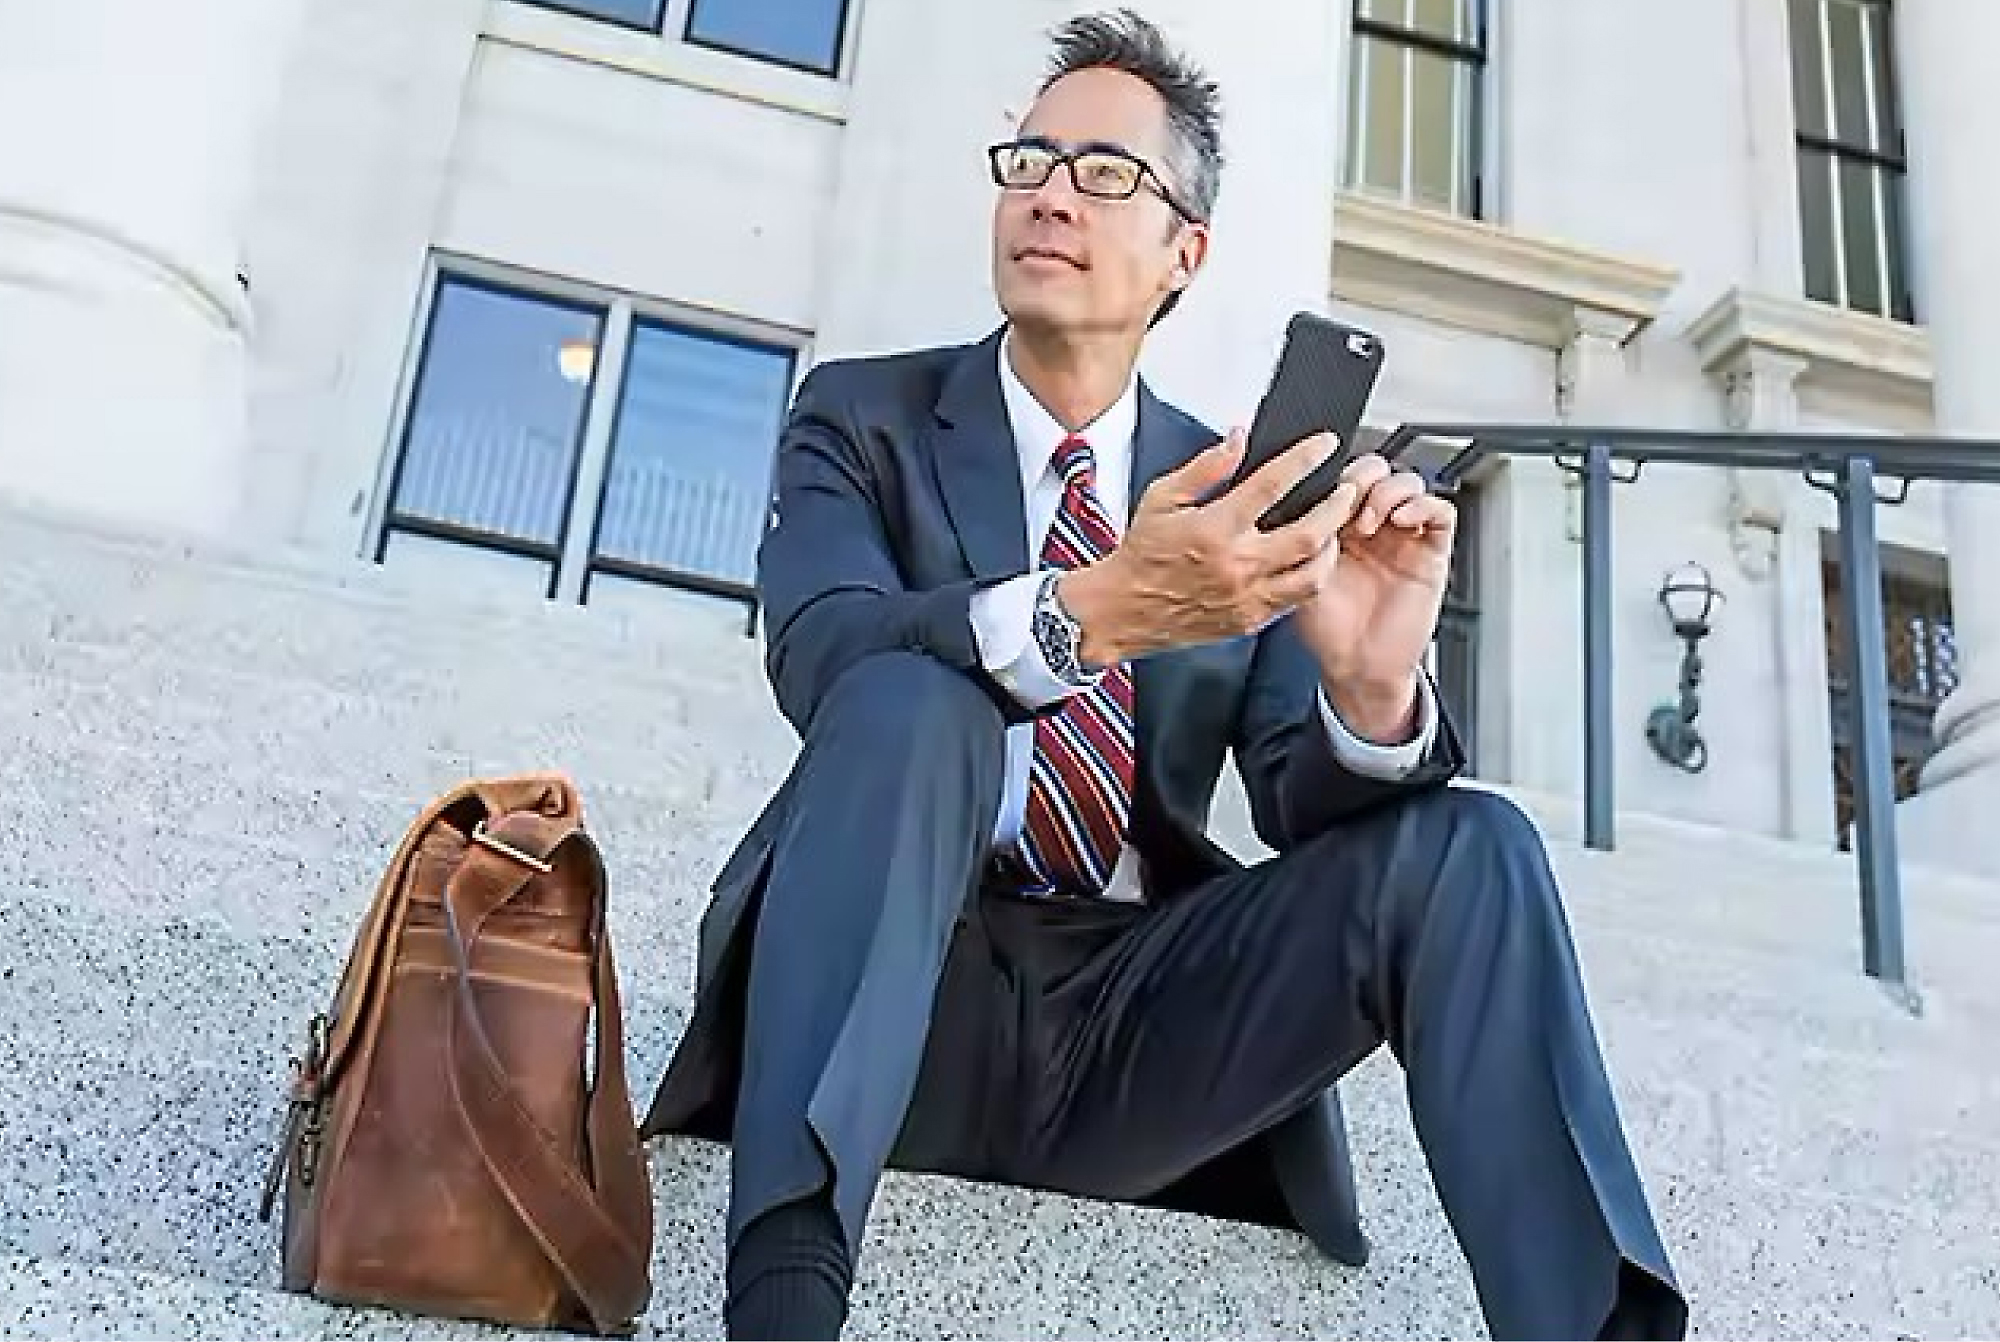 นักธุรกิจในชุดสูทและแว่นตานั่งอยู่บนขั้นนอกอาคาร โดยใช้สมาร์ทโฟนที่มีถุงผ้าอยู่ข้างๆ